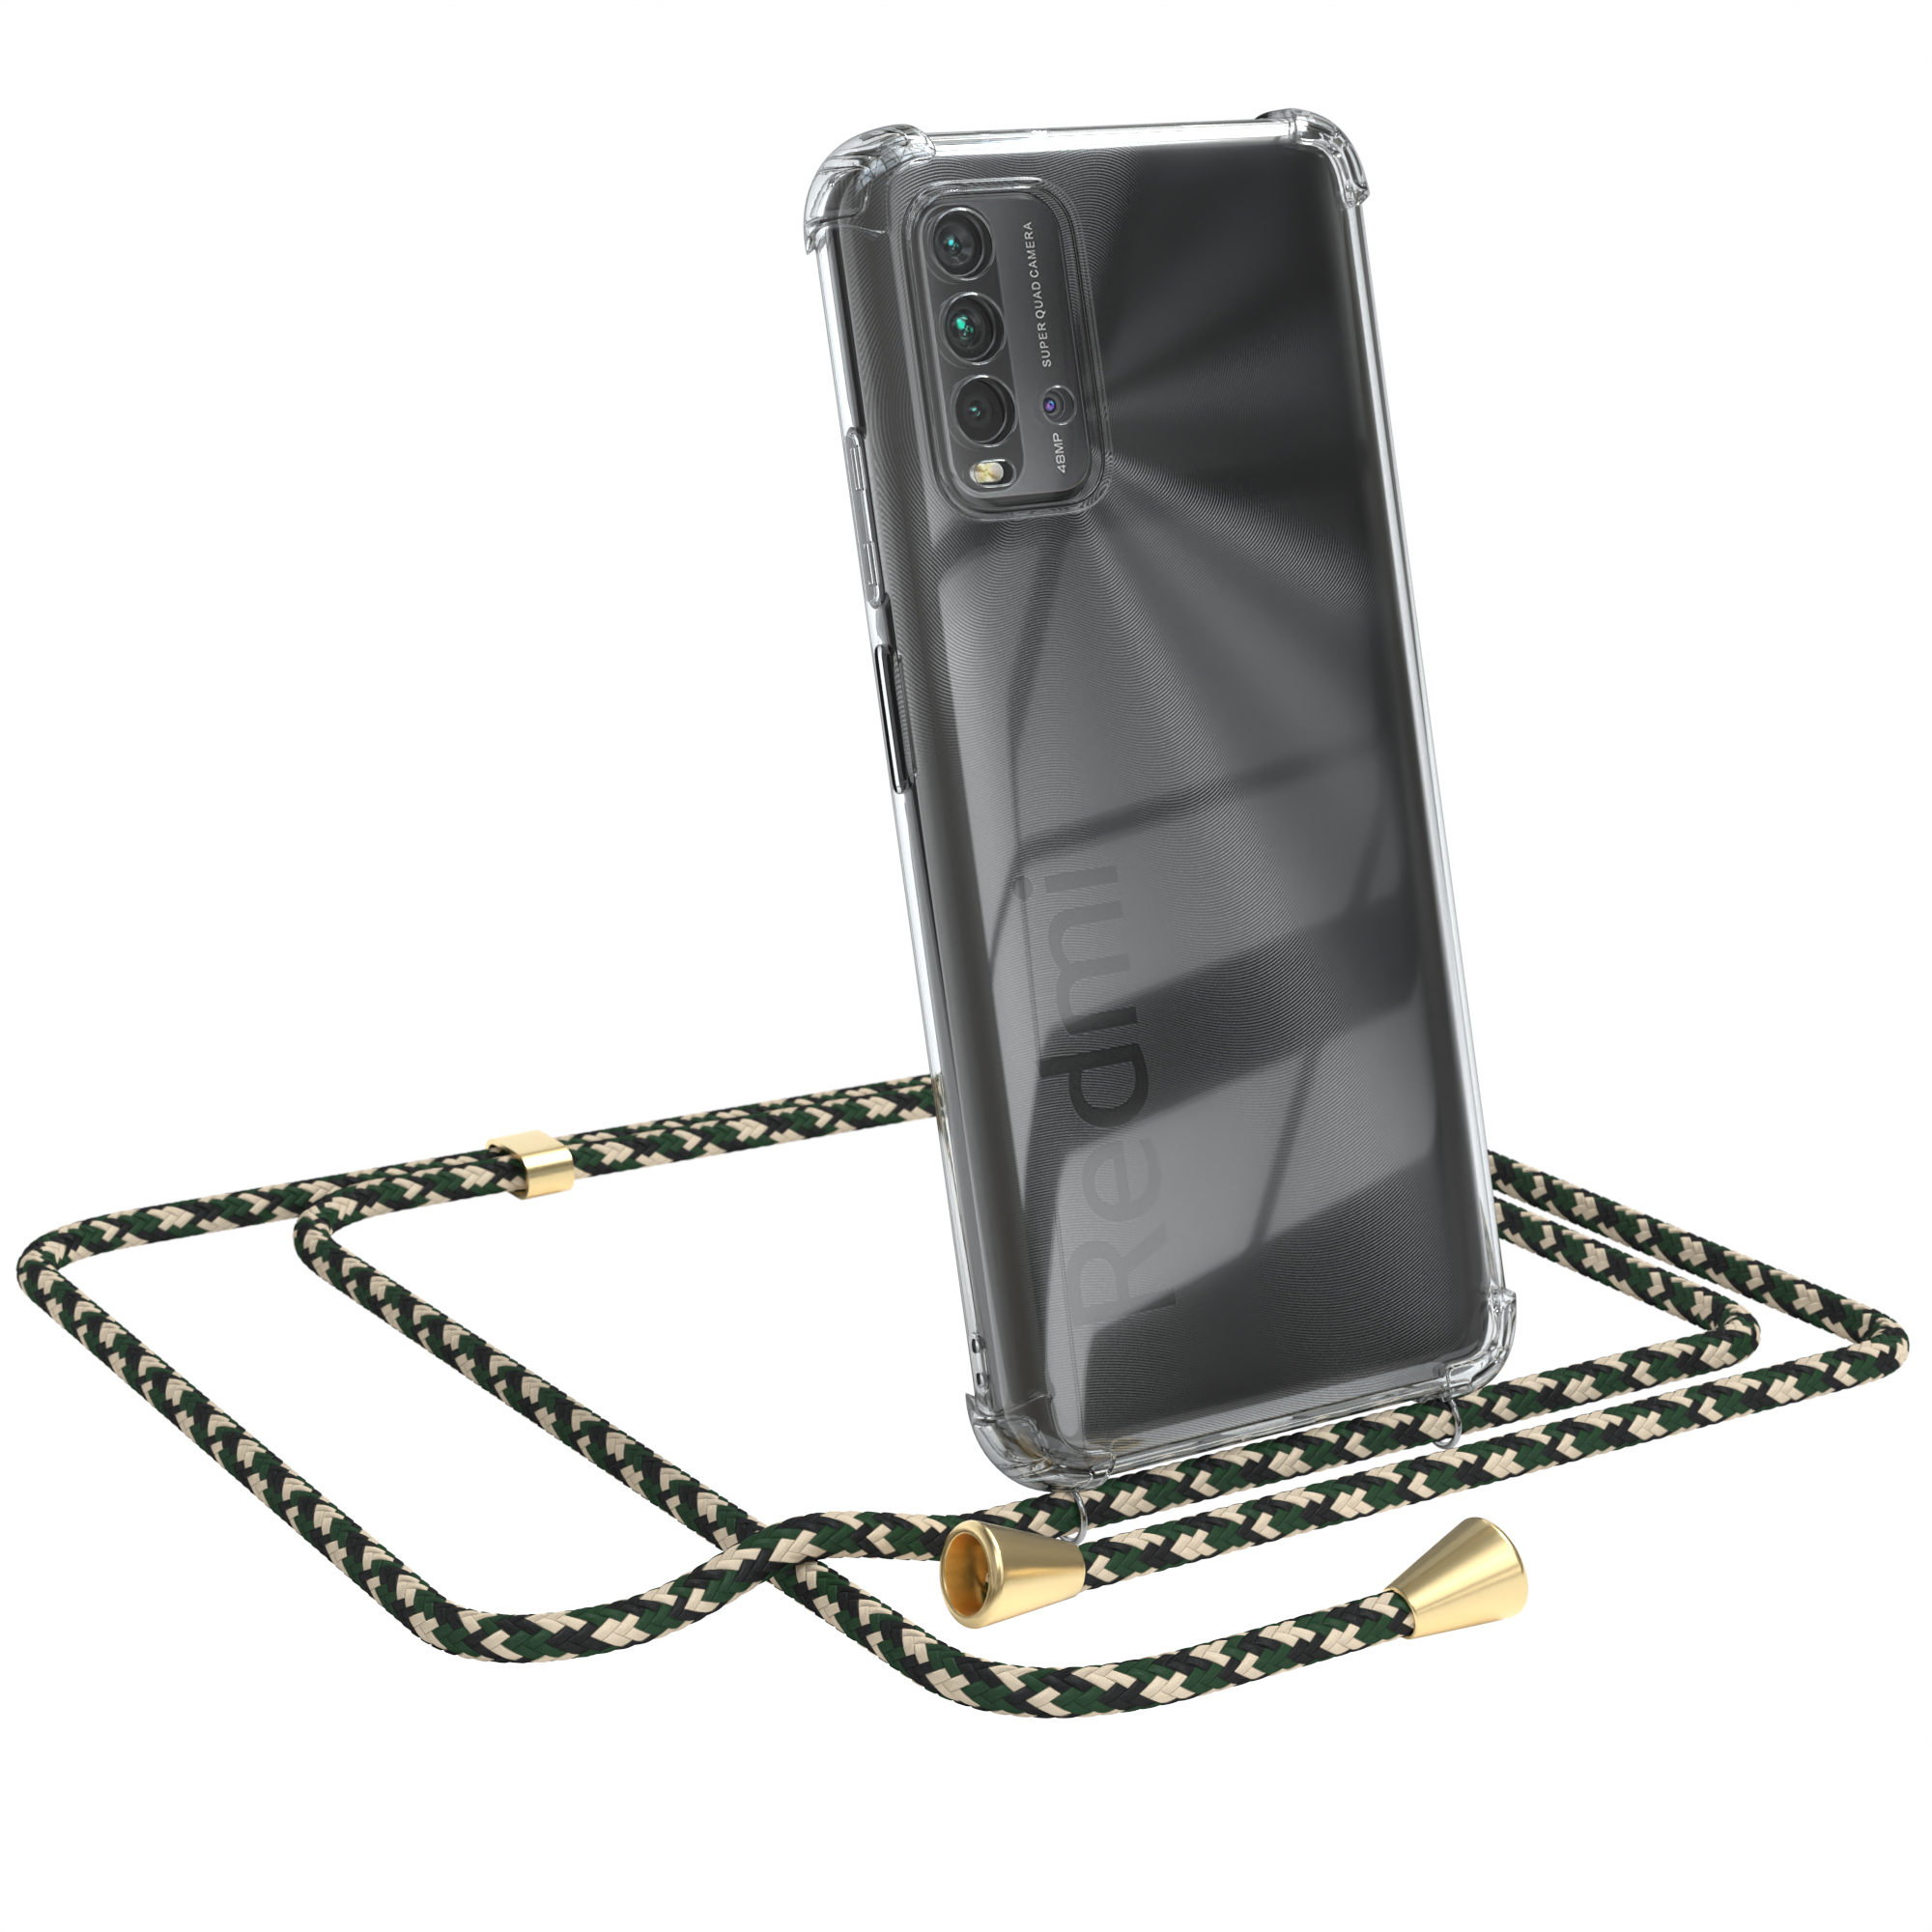 Umhängeband, Clear Redmi Grün Camouflage mit EAZY Xiaomi, 9T, Gold Clips / CASE Cover Umhängetasche,